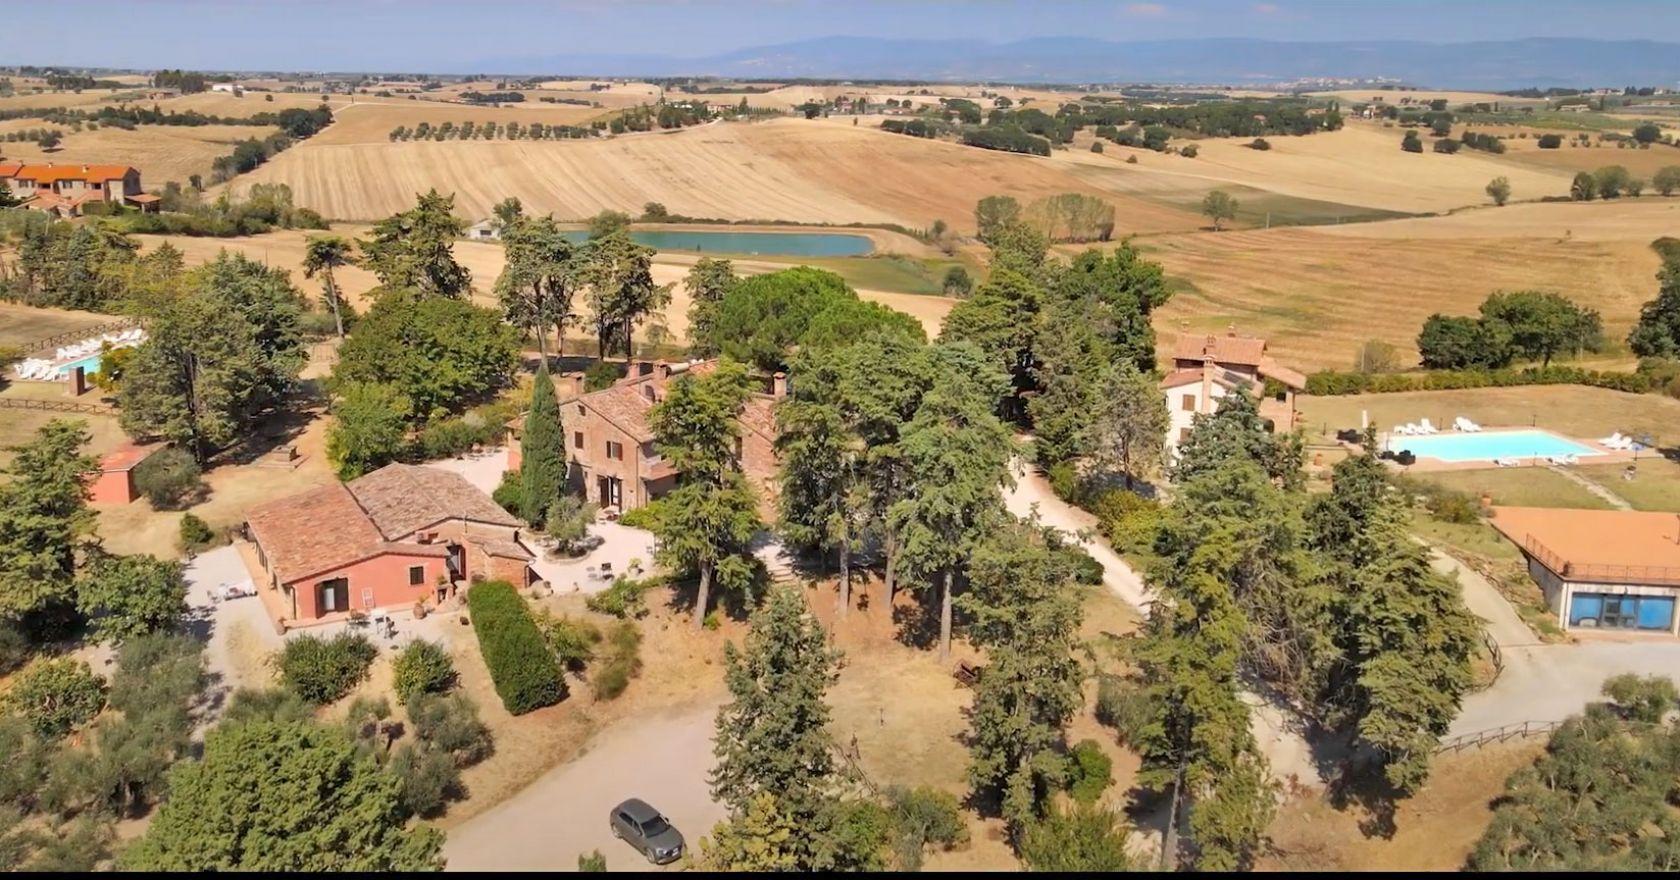 Toscana Immobiliare - Struttura ricettiva in vendita in Umbria